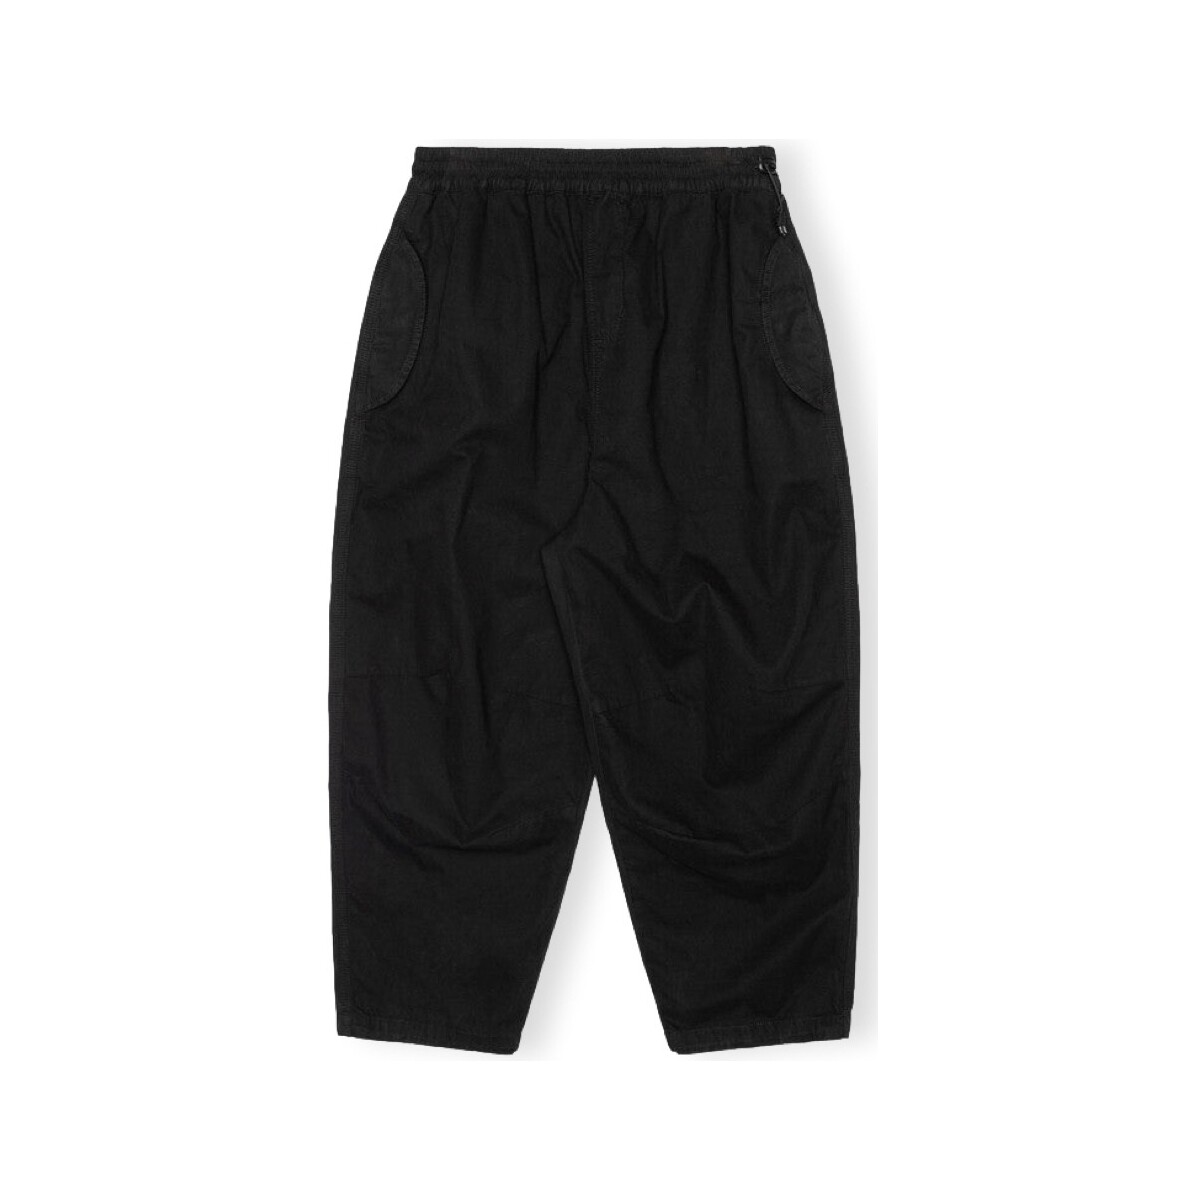 Vêtements Homme Pantalons Revolution Parachute Trousers 5883 - Black Noir